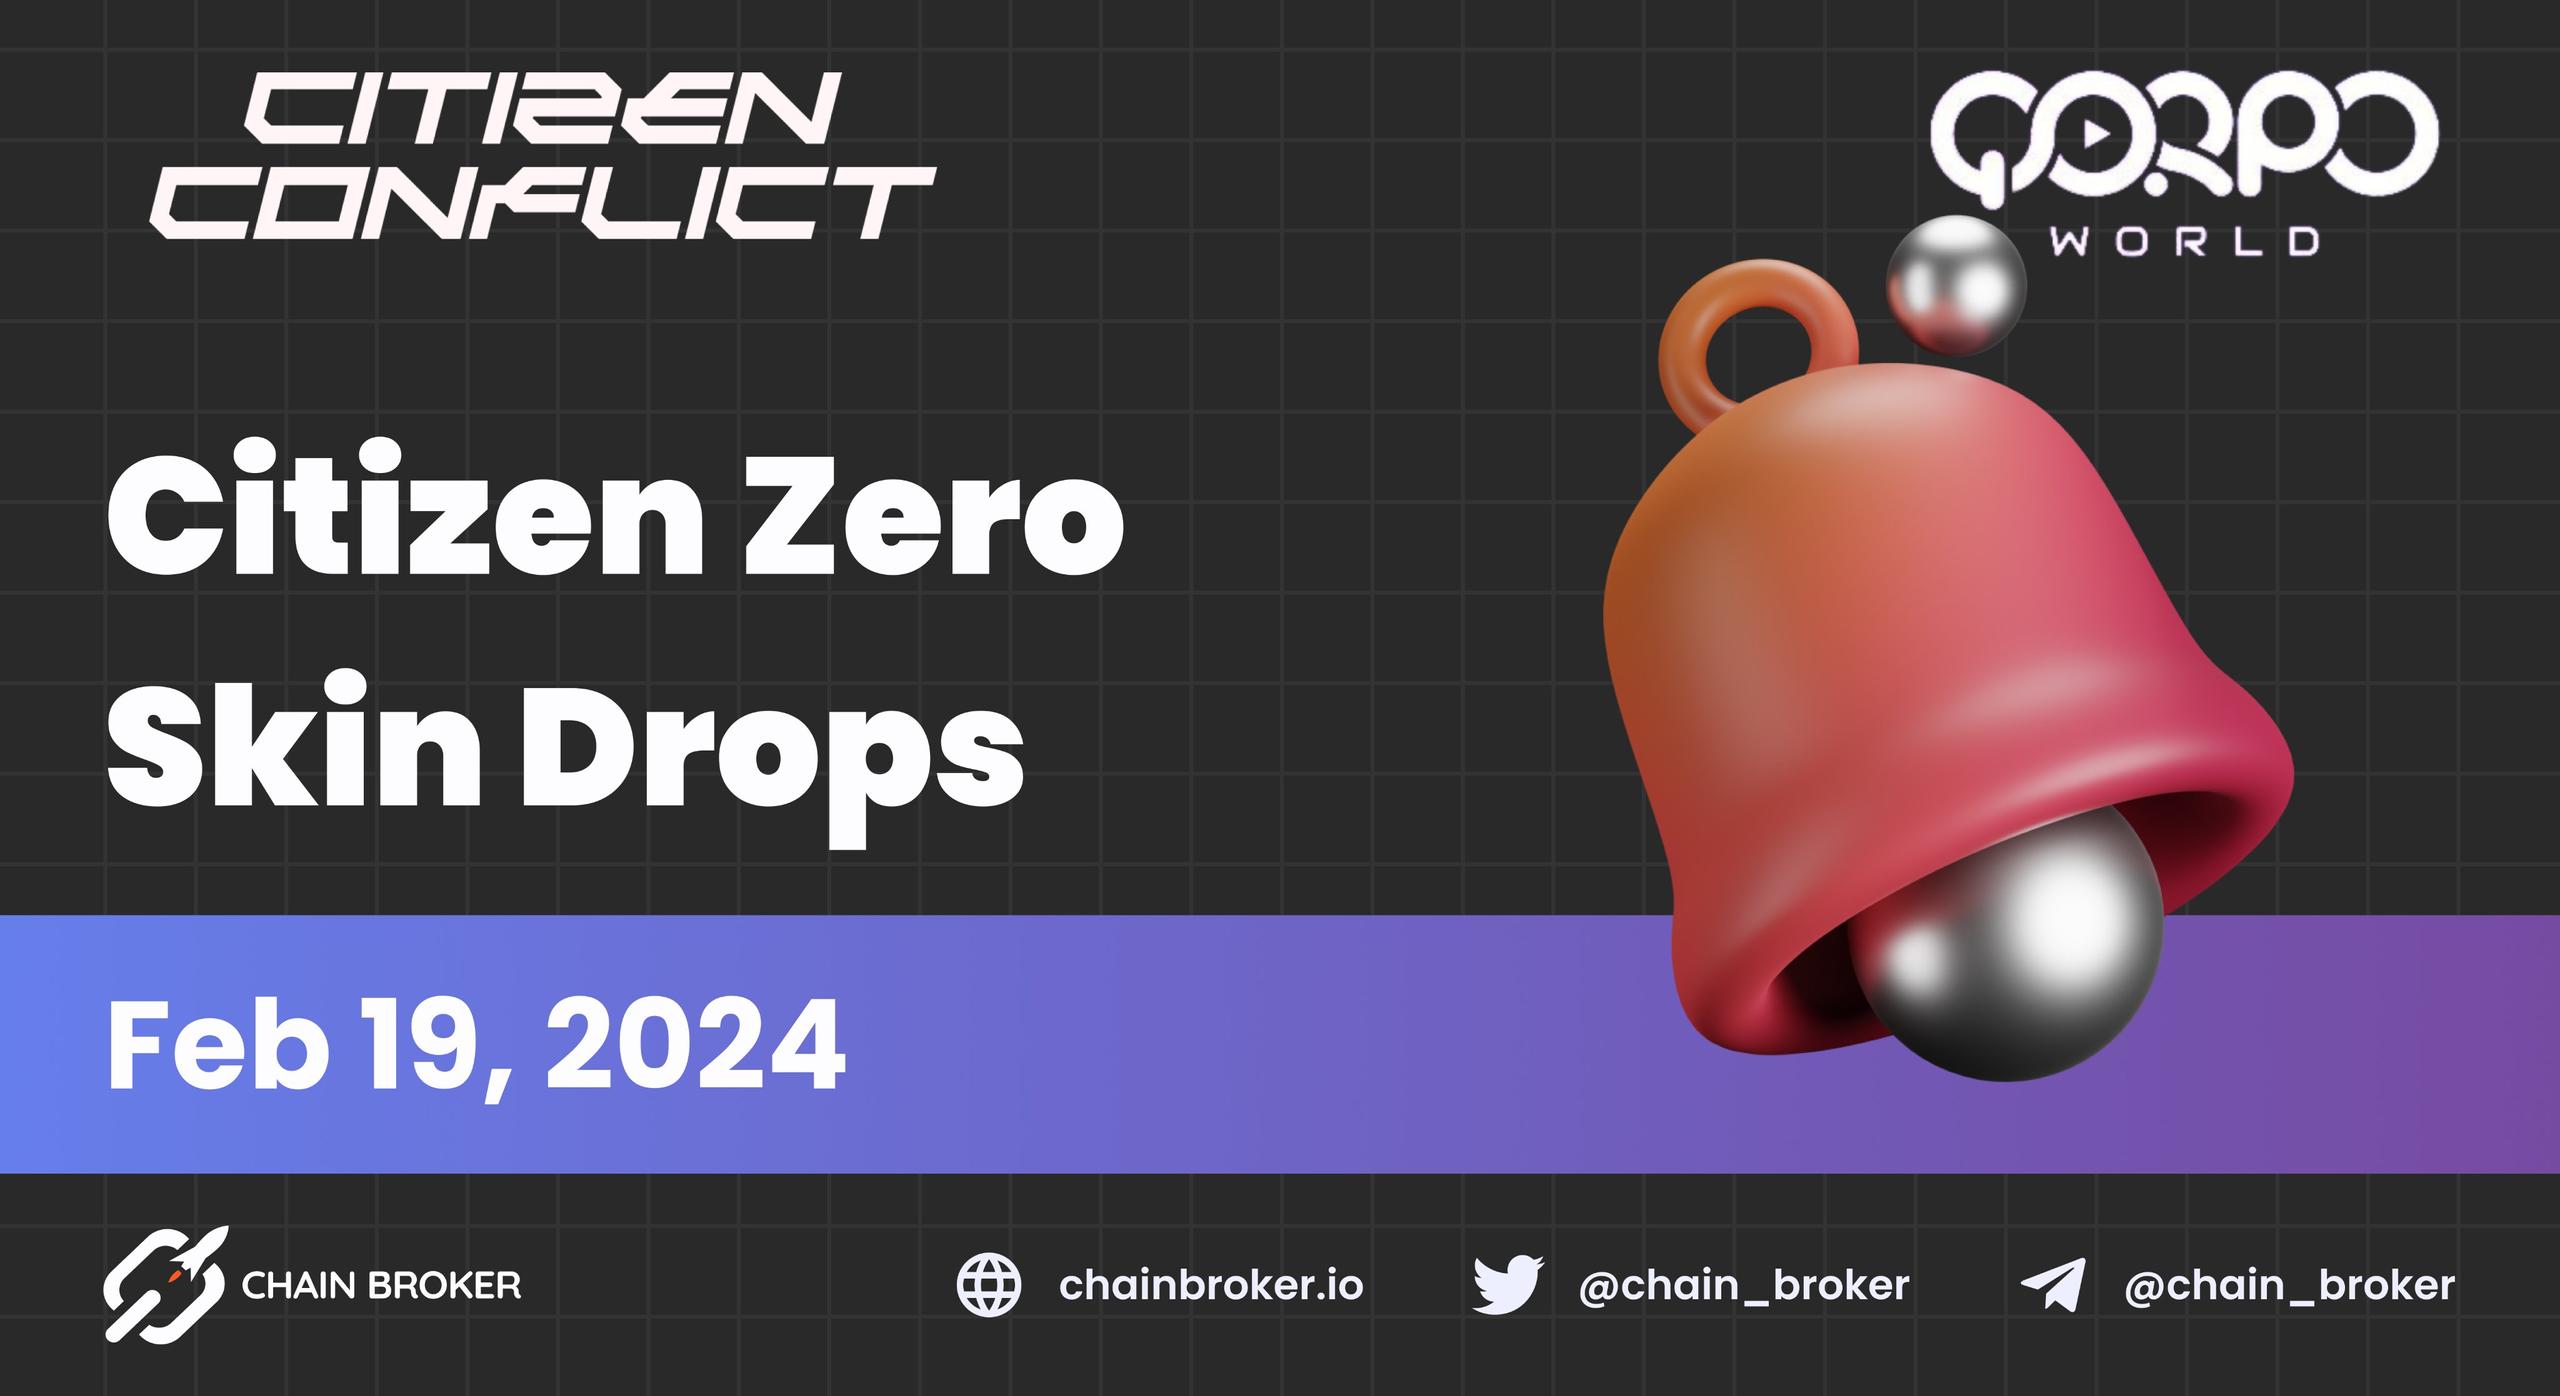 Citizen Conflict announces the Citizen Zero skin drops